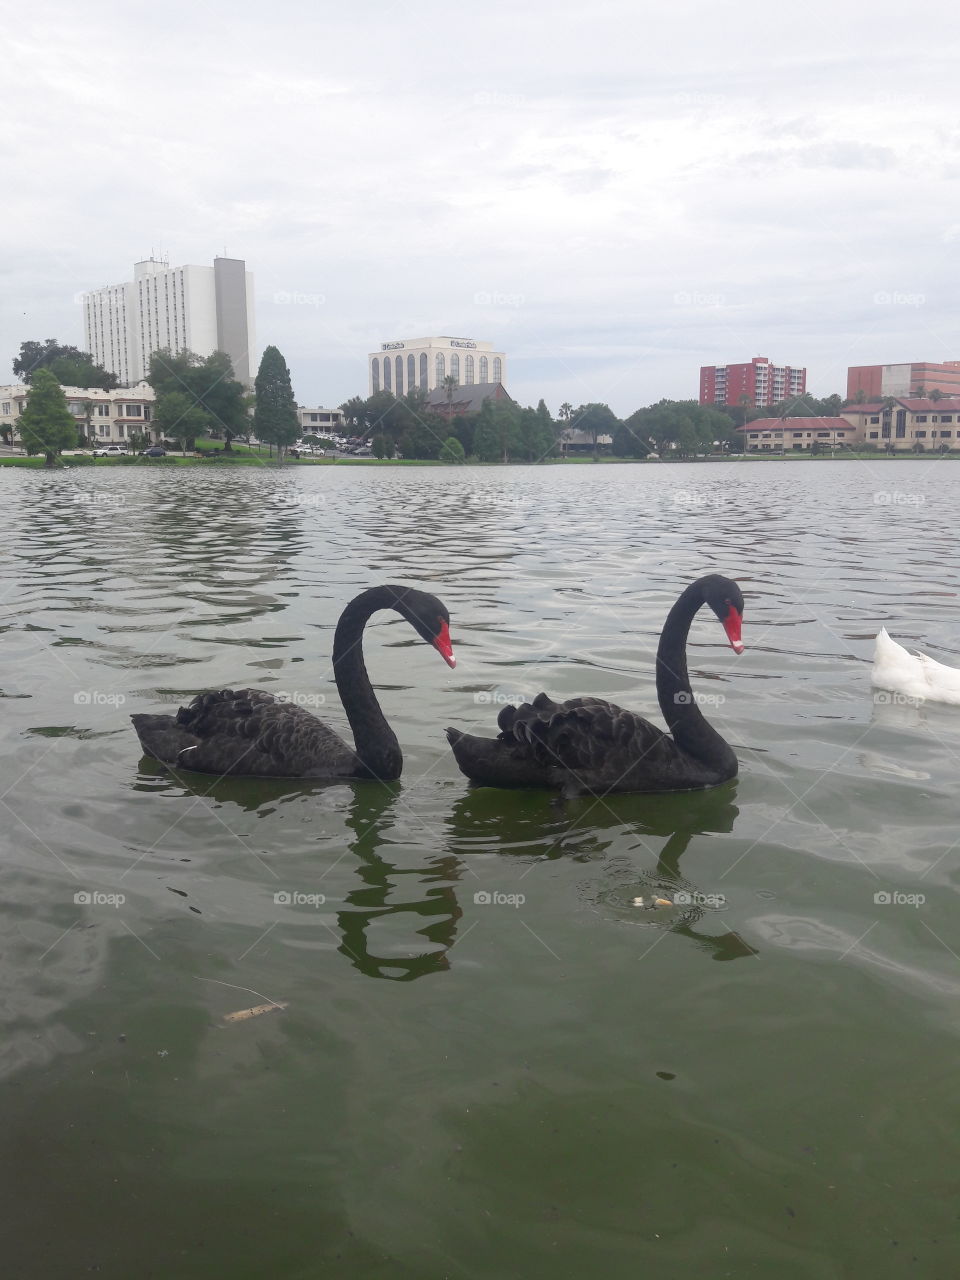 lake Morton Lakeland Florida black swans matter